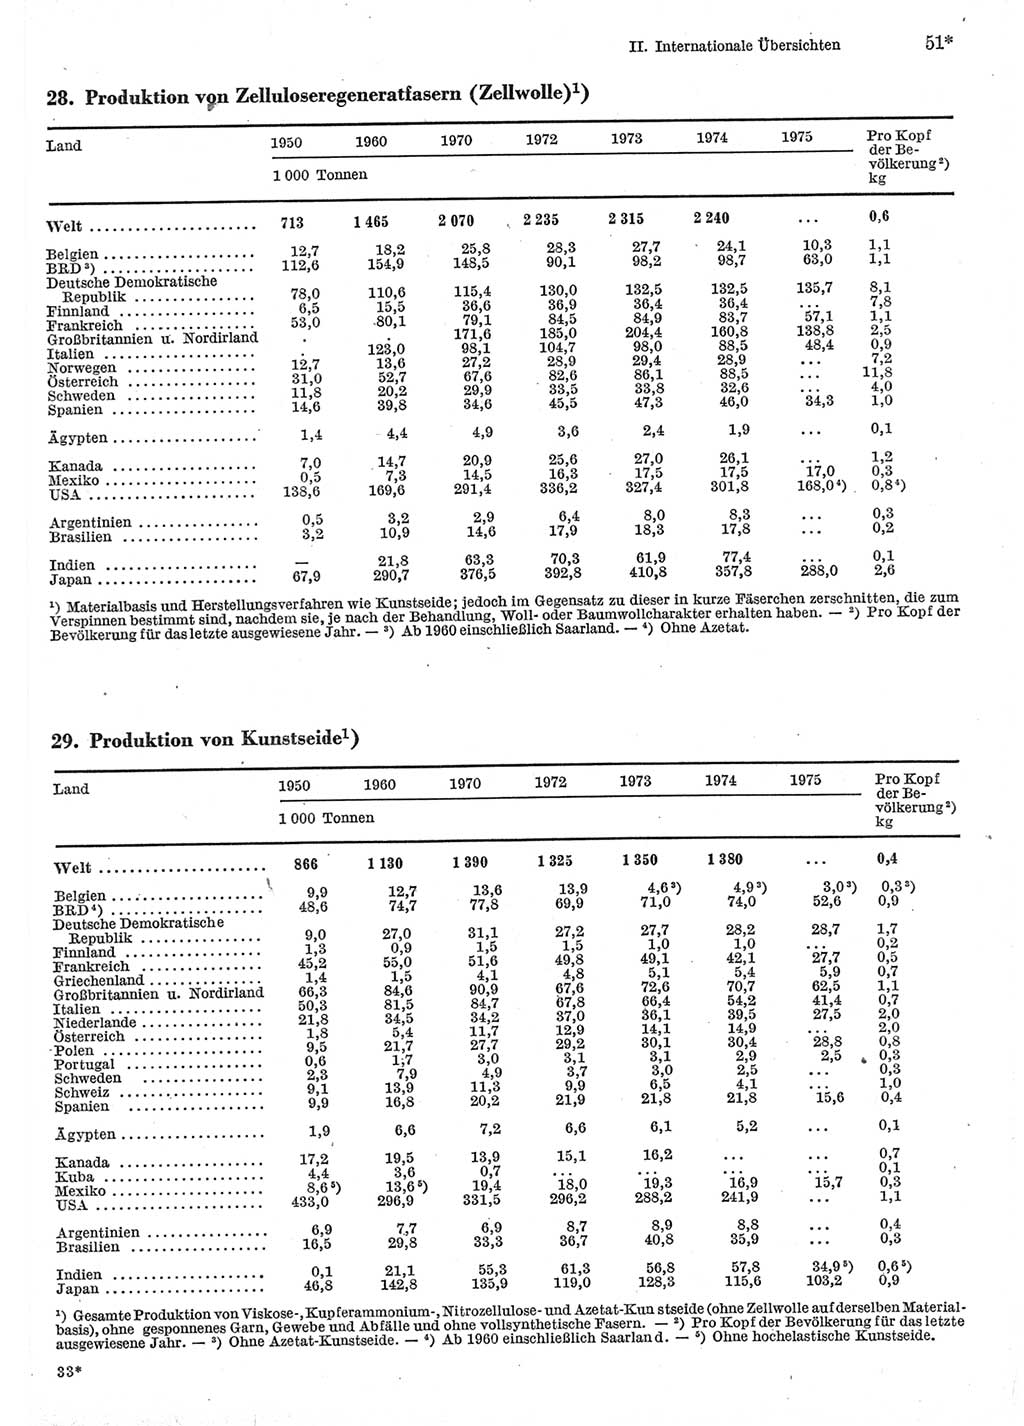 Statistisches Jahrbuch der Deutschen Demokratischen Republik (DDR) 1977, Seite 51 (Stat. Jb. DDR 1977, S. 51)